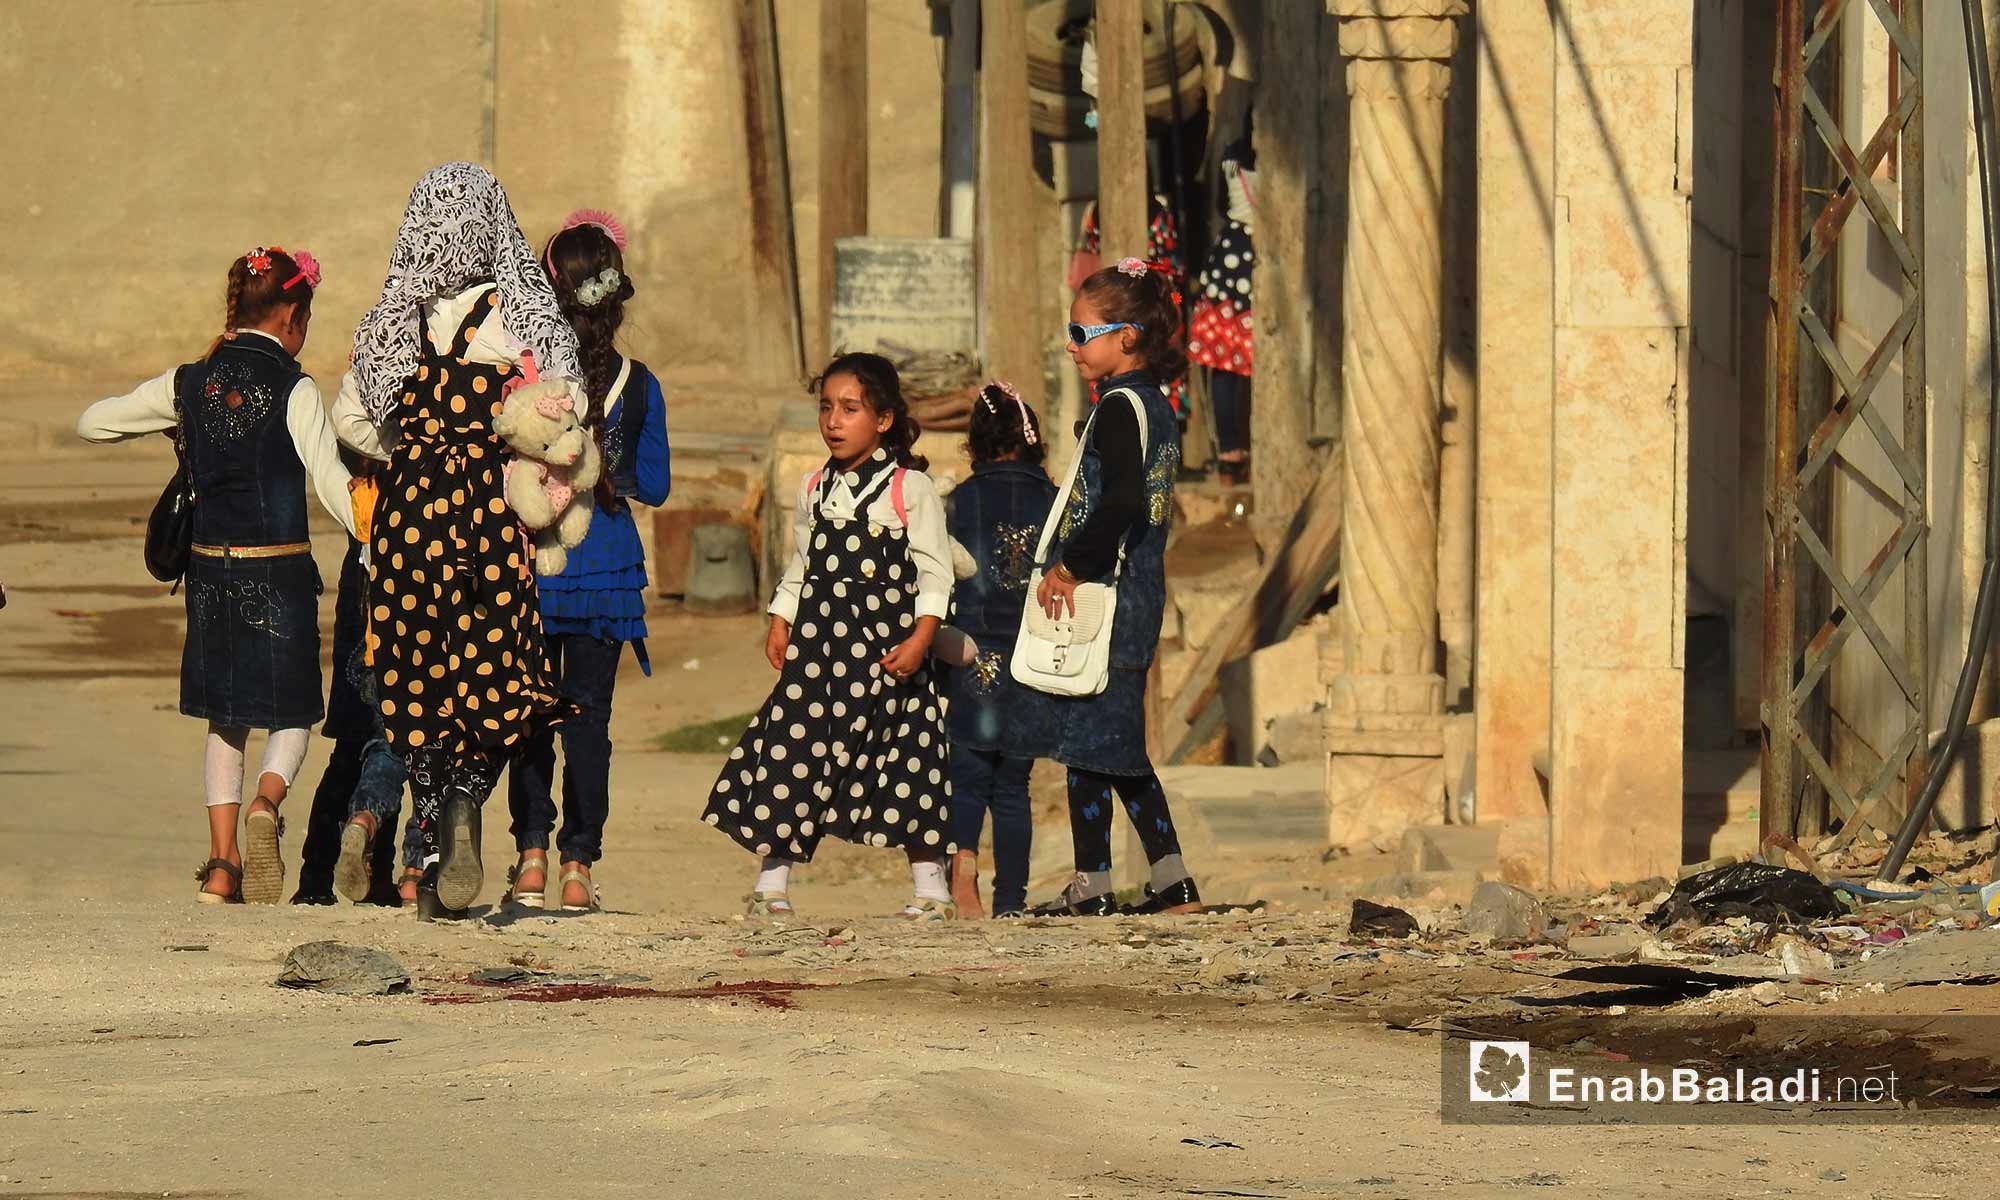 الأطفال في بلدة دابق بريف حلب الشمالي يخرجون للاحتفال بالعيد - 1 أيلول 2017 (عنب بلدي)